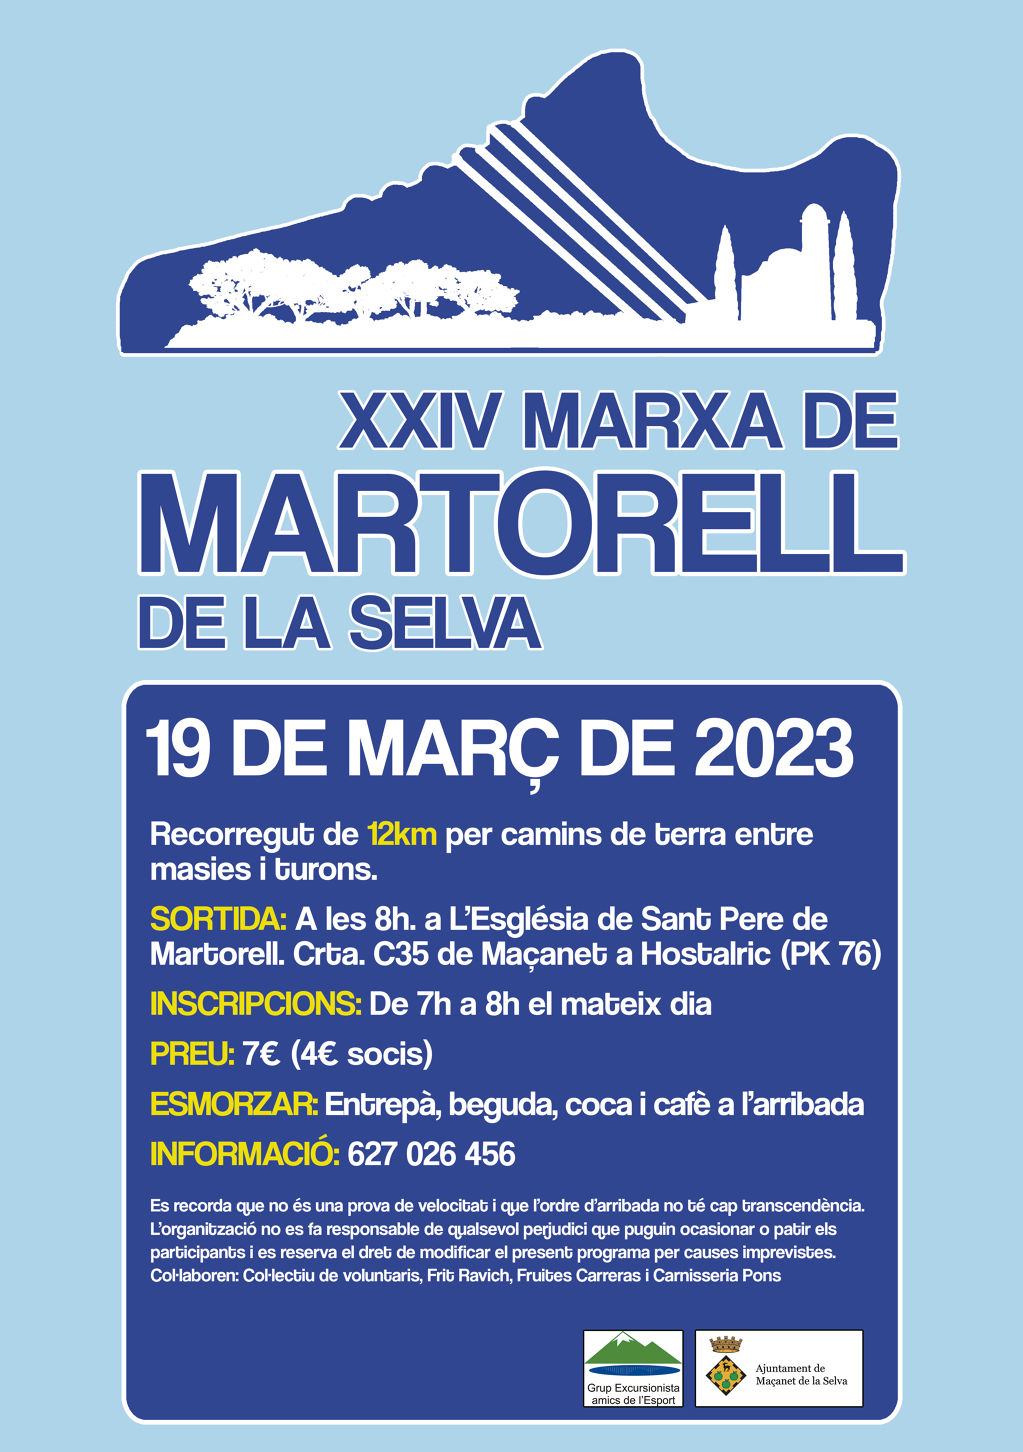 XXIV Marxa de Martorell - marxa_martorelldef.jpg